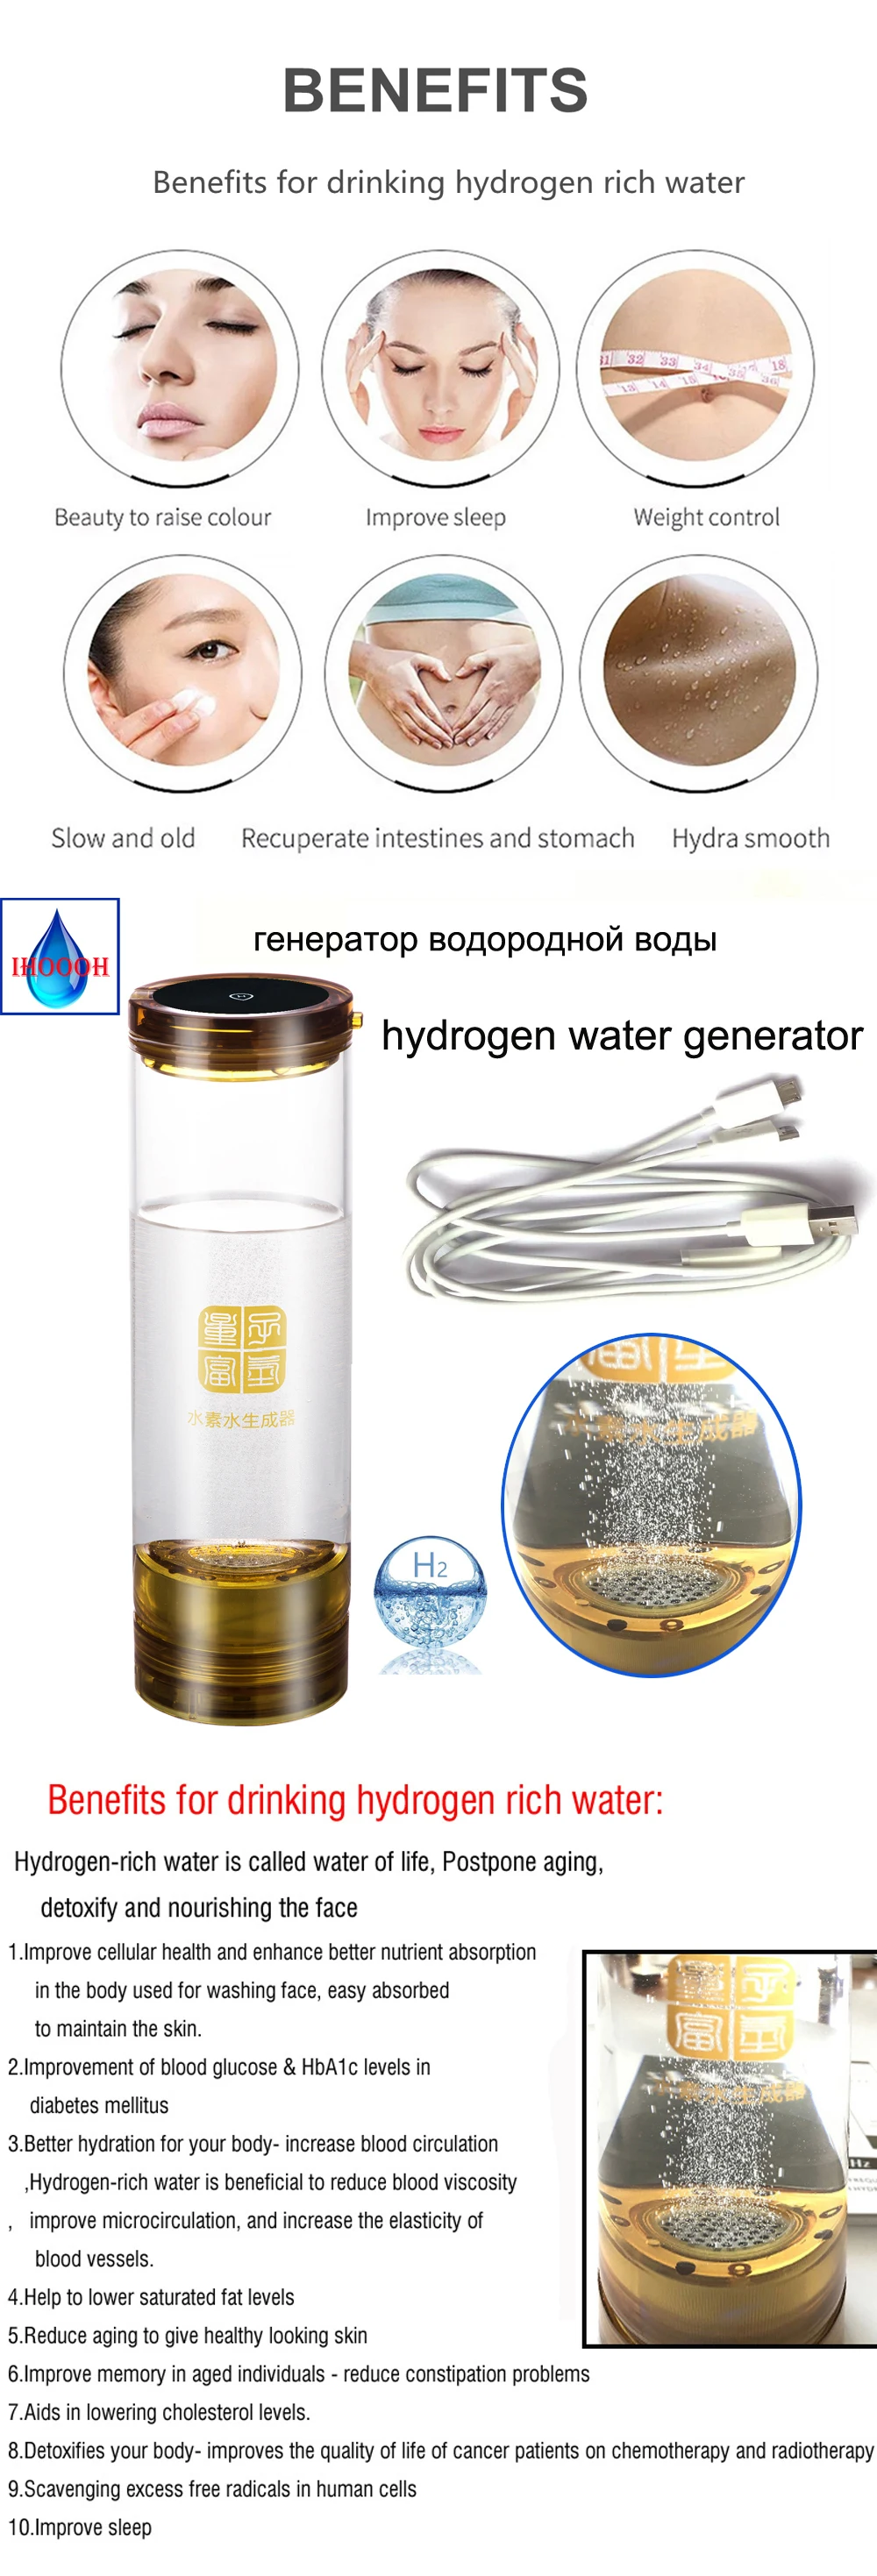 H2 генератор водорода и разделения кислорода Кубок SPE мембраны H2 богатые водородом бутылка для воды Электролизный ионизатор генератор